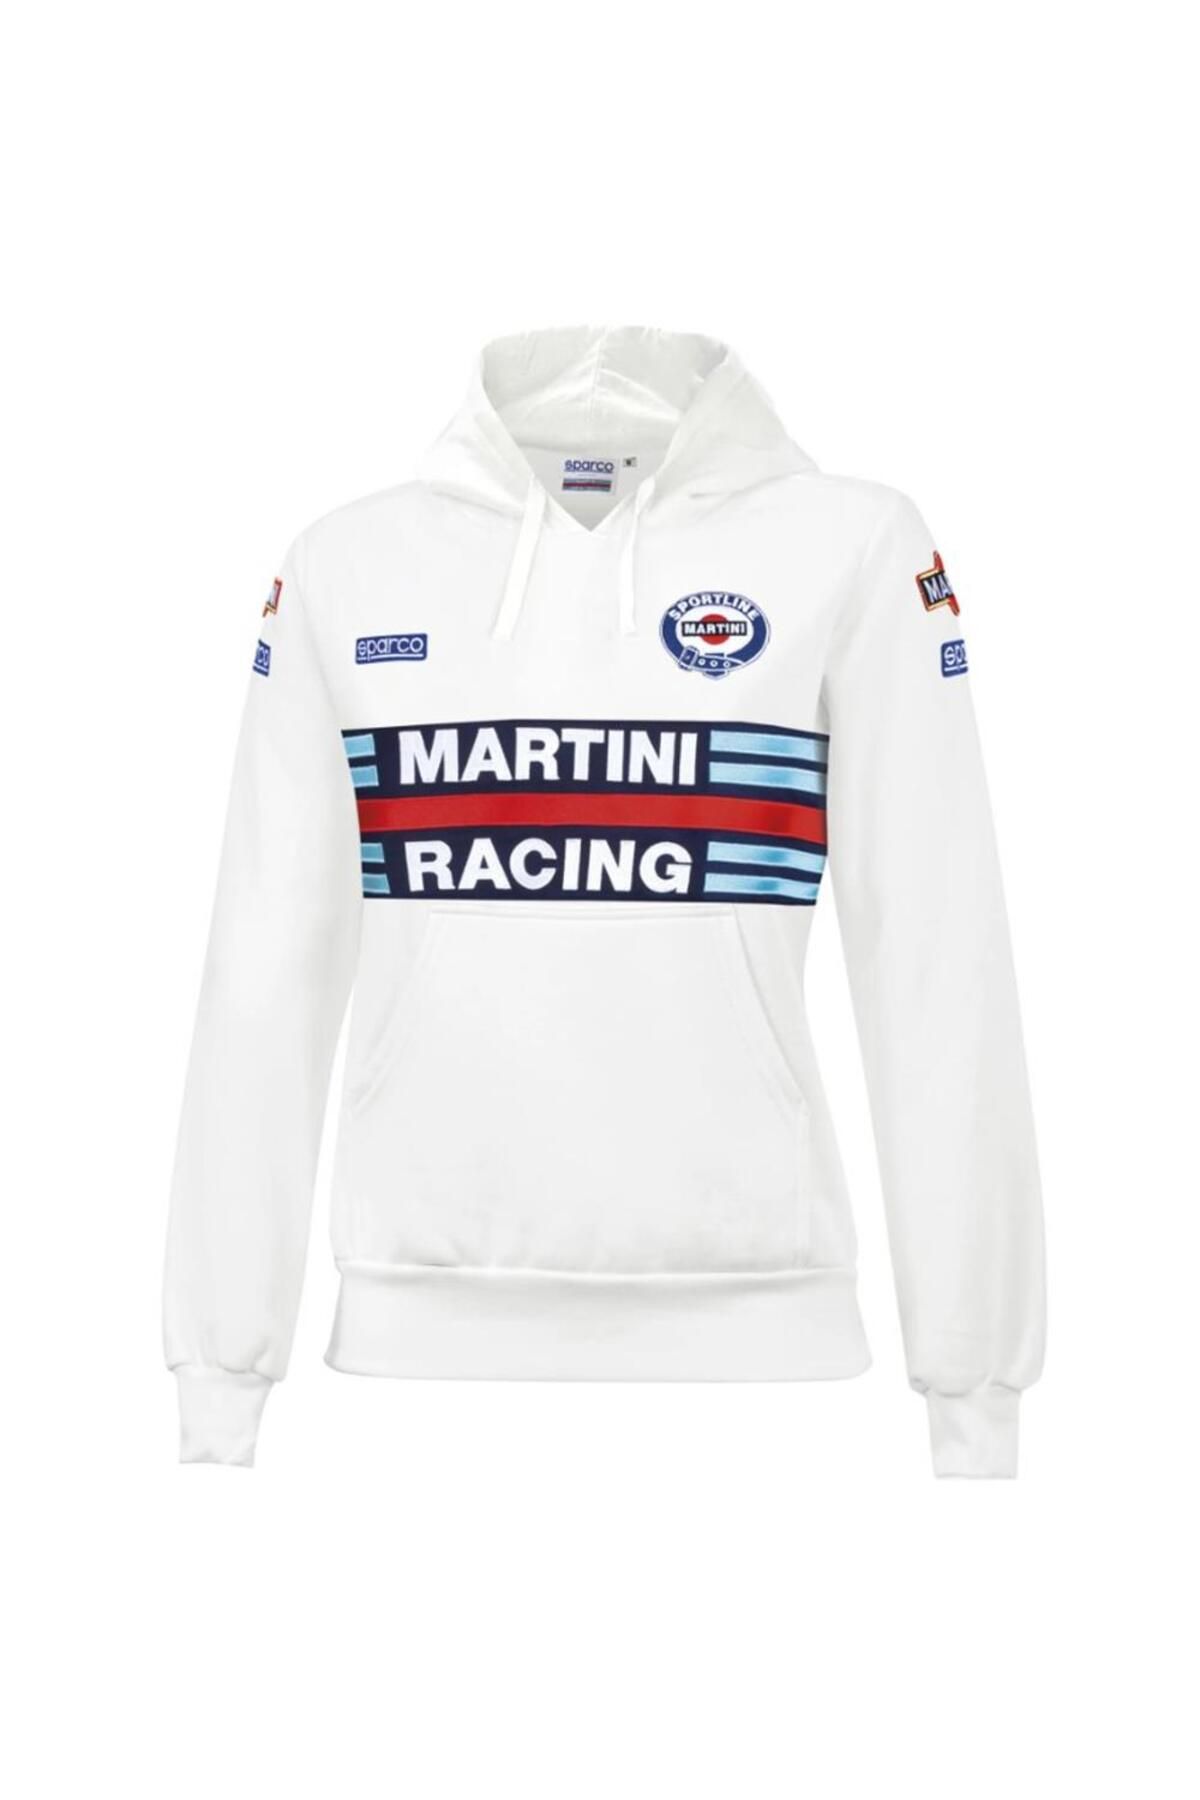 Sparco Martini Racing Felpa Lady Hoodıe Beyaz S Beden